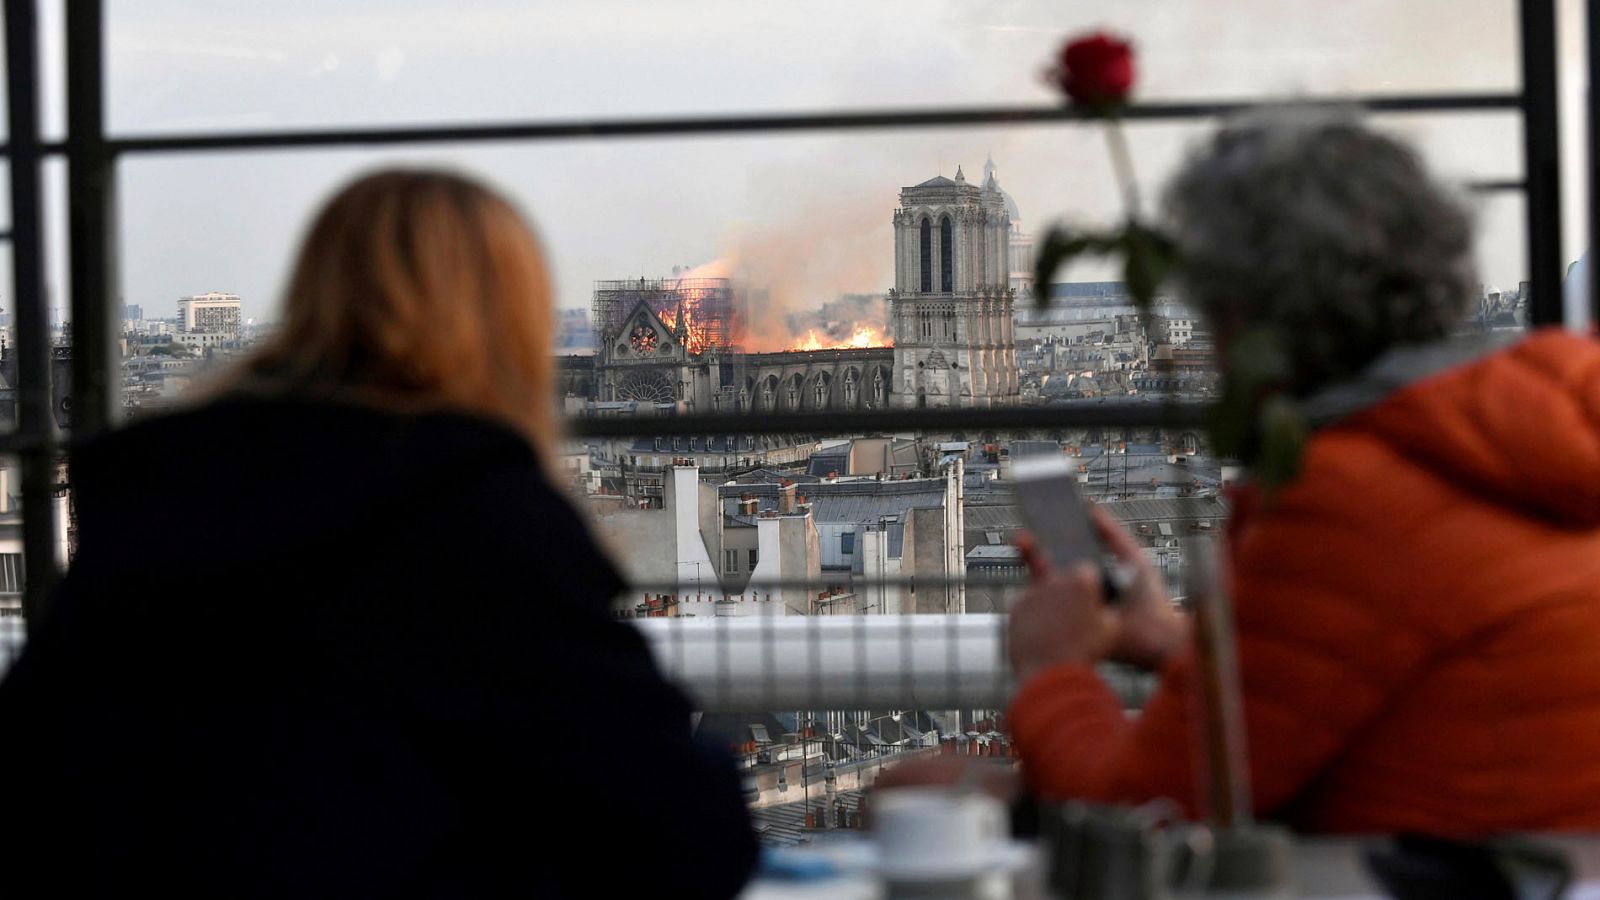 Incendio en la Catedral Notre Dame de París: Una vecina de París, sobre el incendio de Notre Dame: "Tuve que cambiar de canal, me da muchísima pena" - RTVE.es